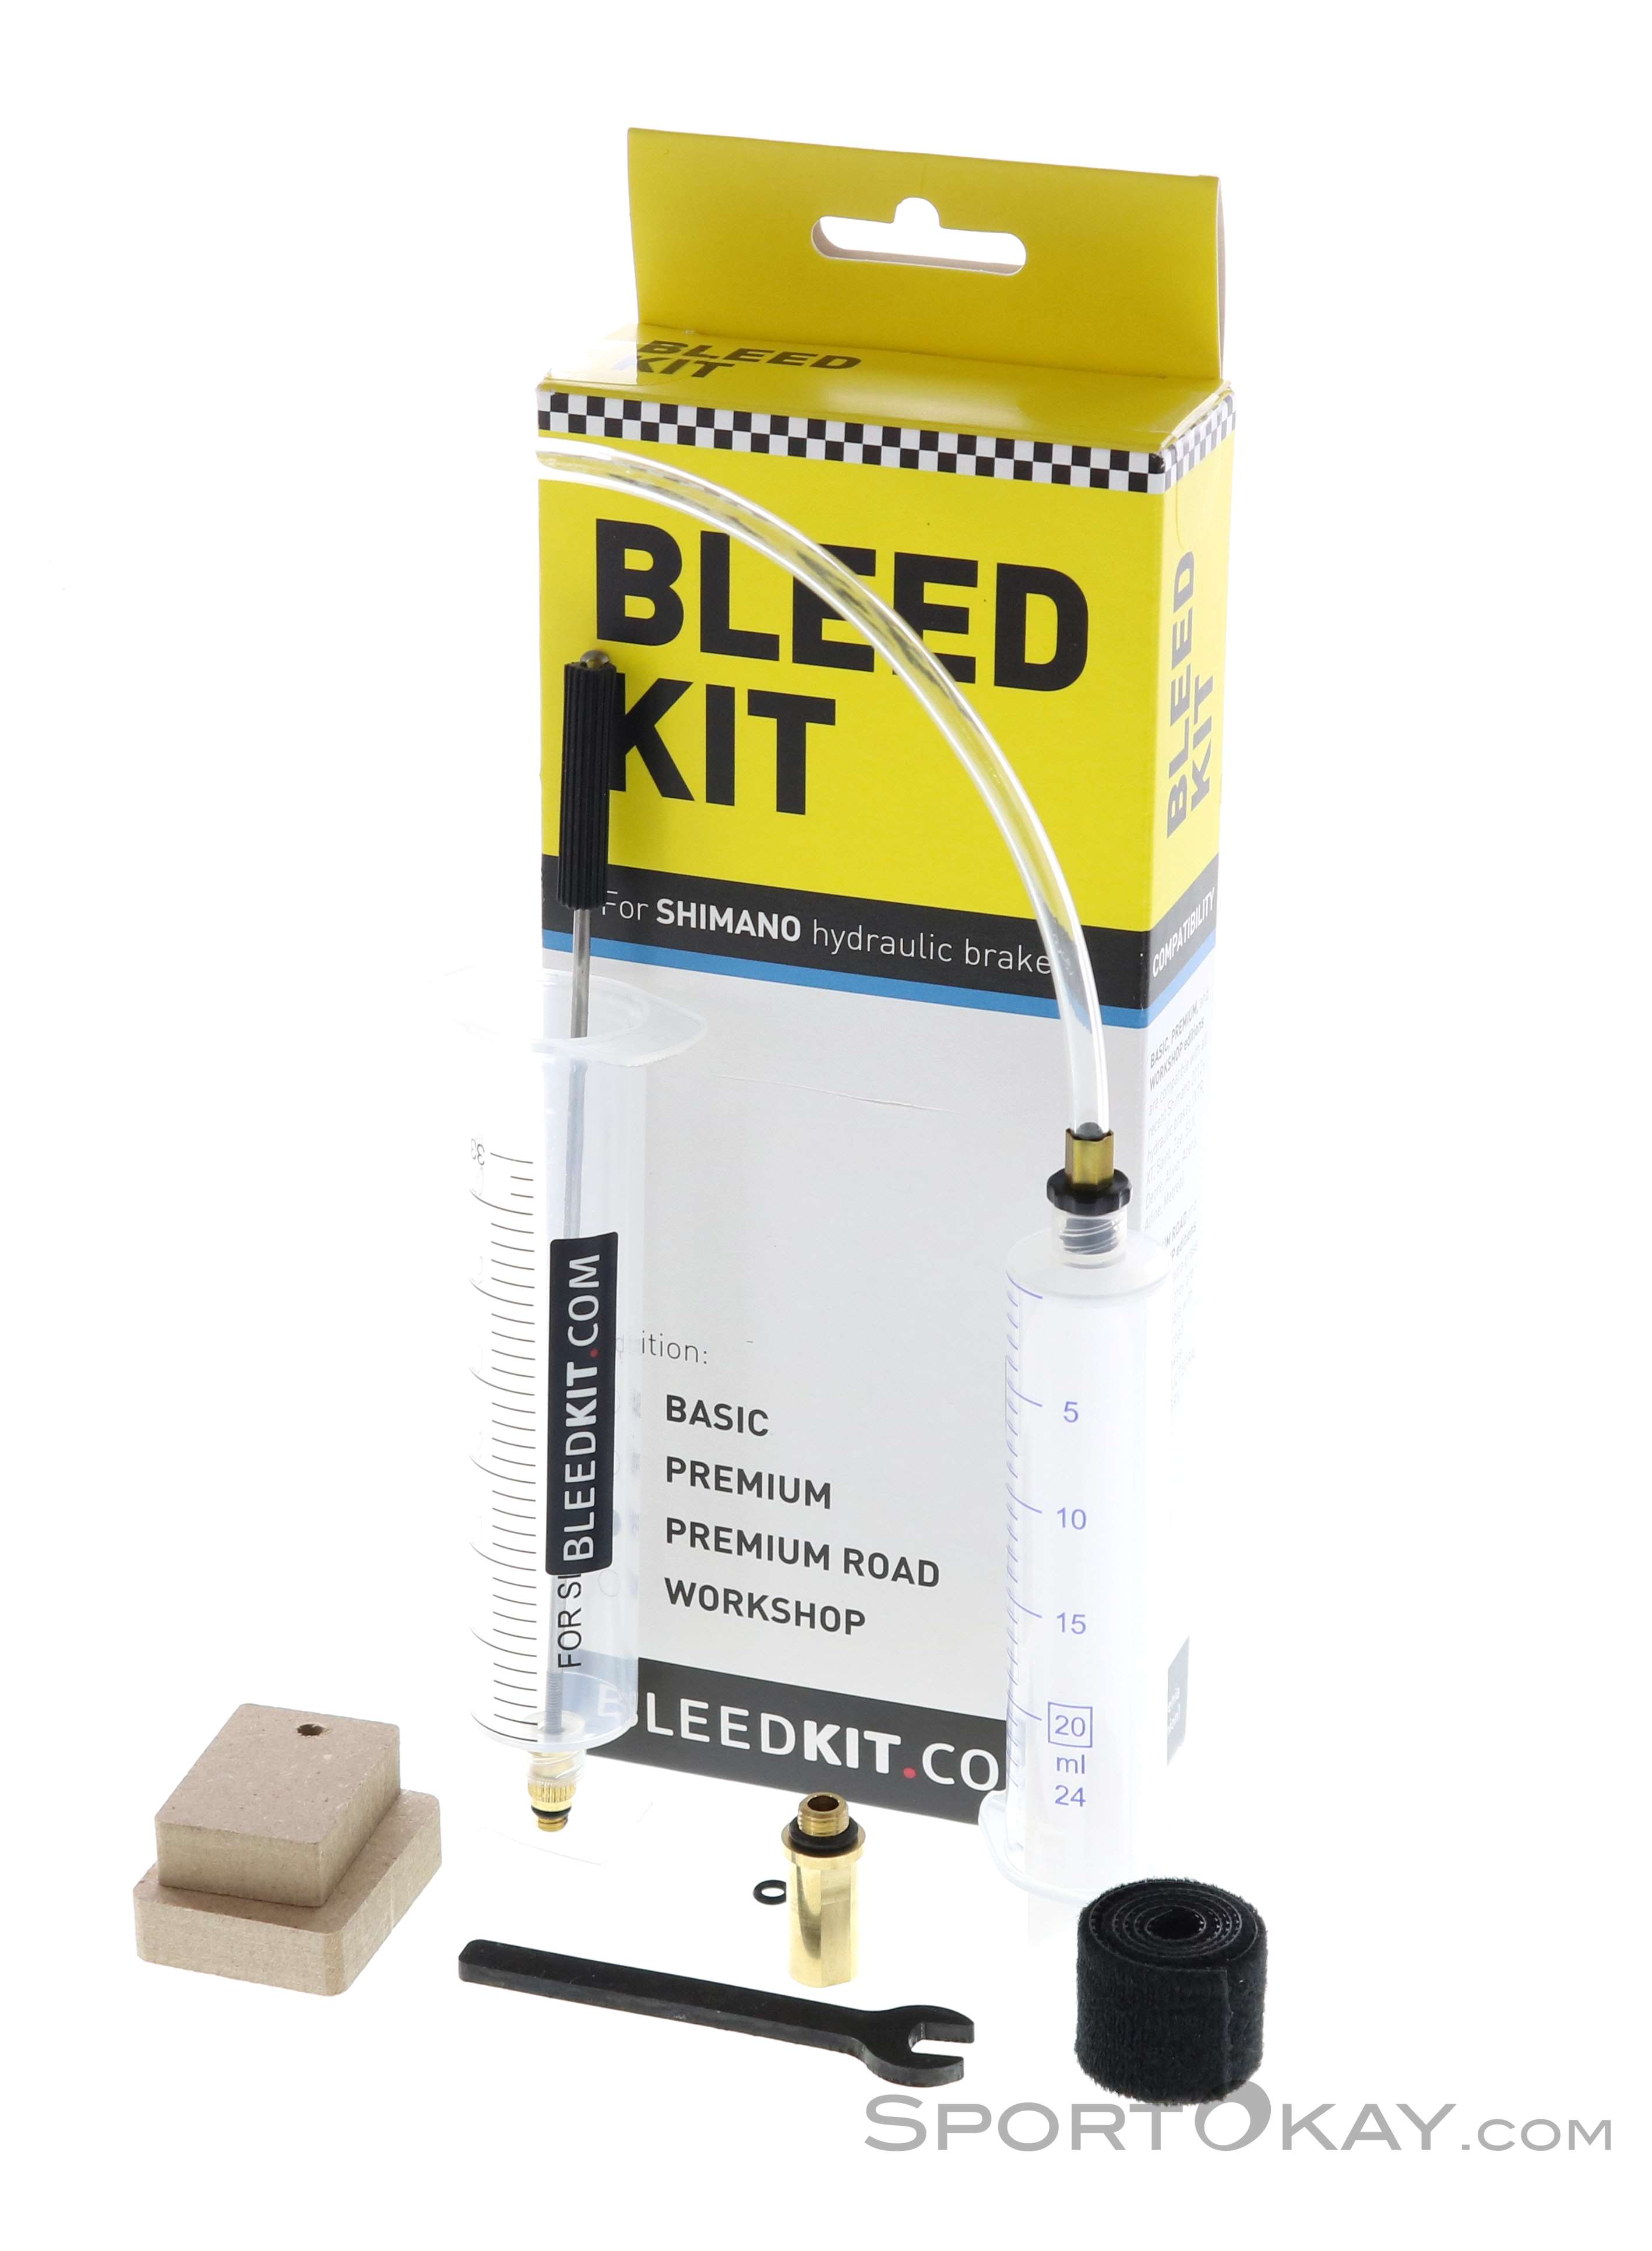 Bleedkit Kit de Purge Premium pour les freins hydrauliques Shimano